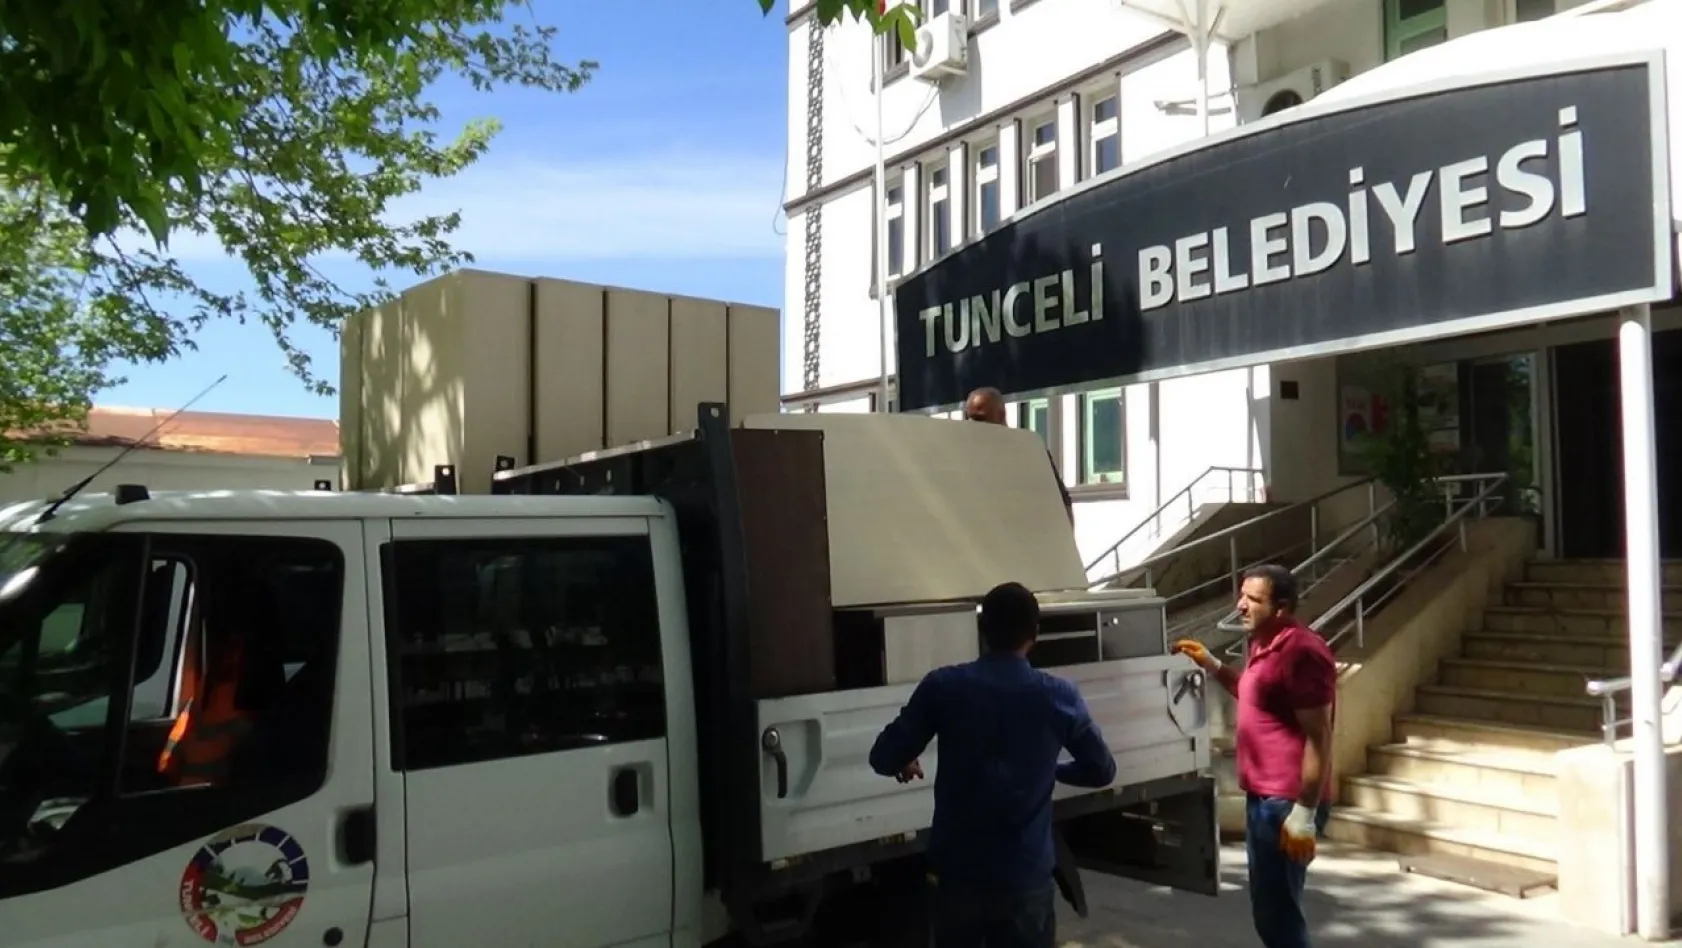 Tunceli Belediyesi binası boşaltıldı!